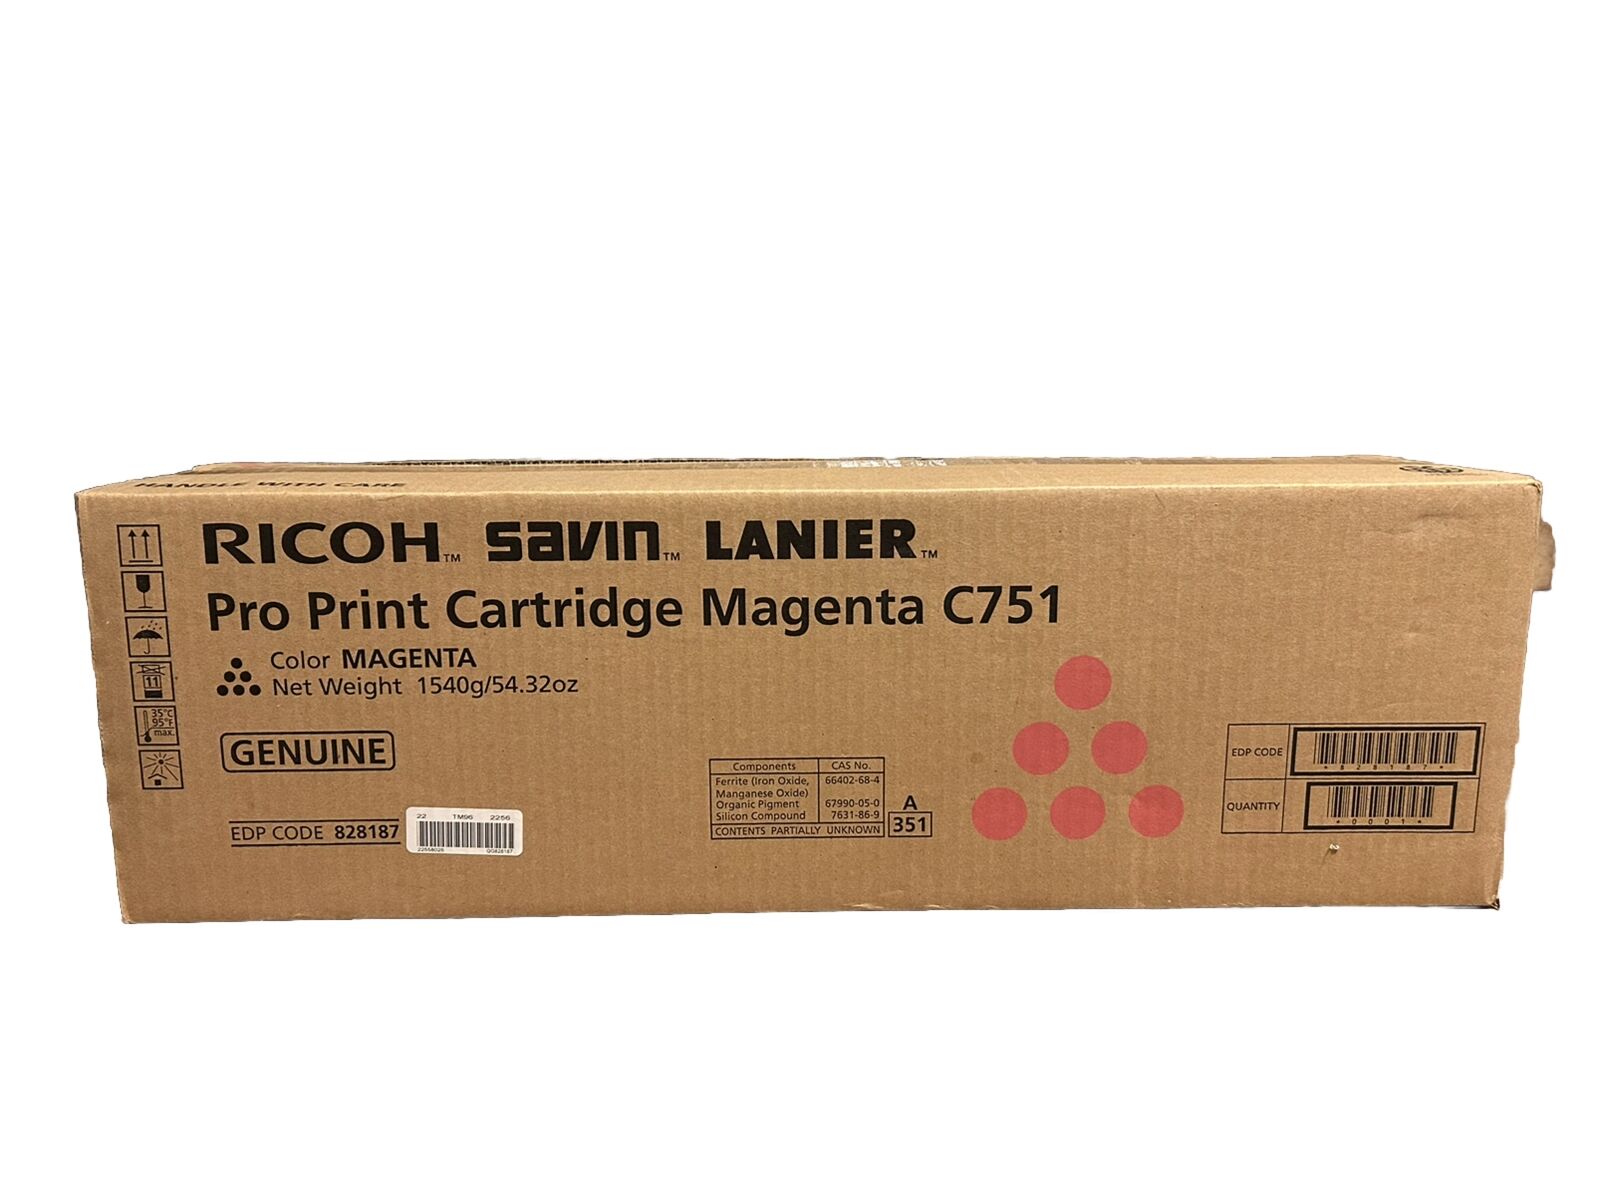 Genuine Ricoh 828187 Magenta Toner Cartridge For Pro C751, Pro C651EX - NEW